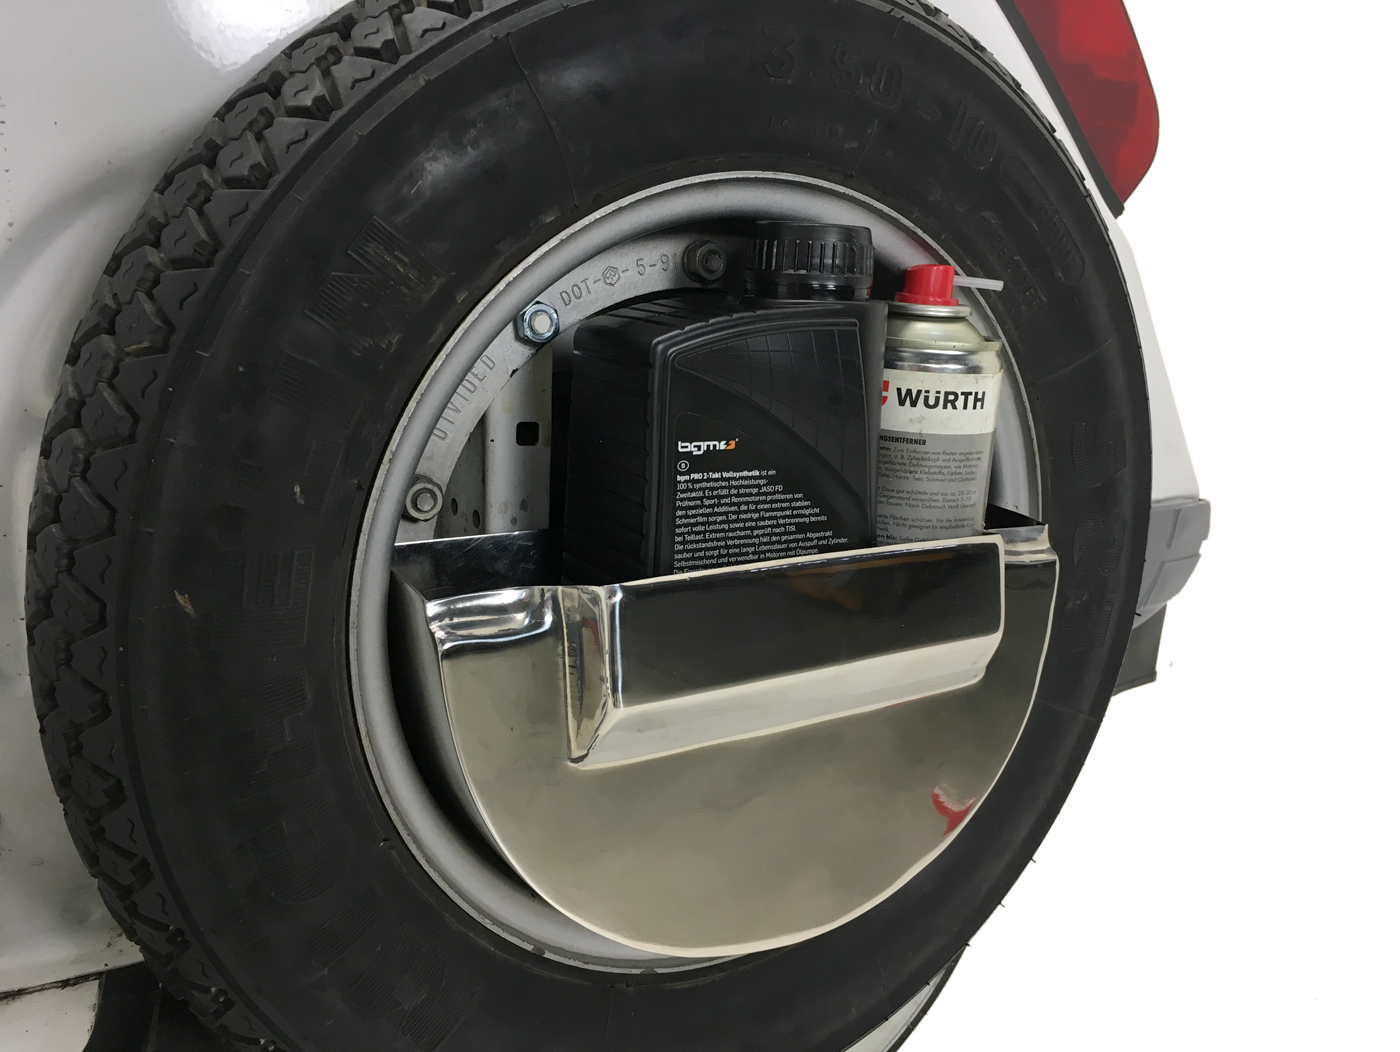 Lambretta CUBBY BOX combiné Boîte à Outils & Support de roue de secours